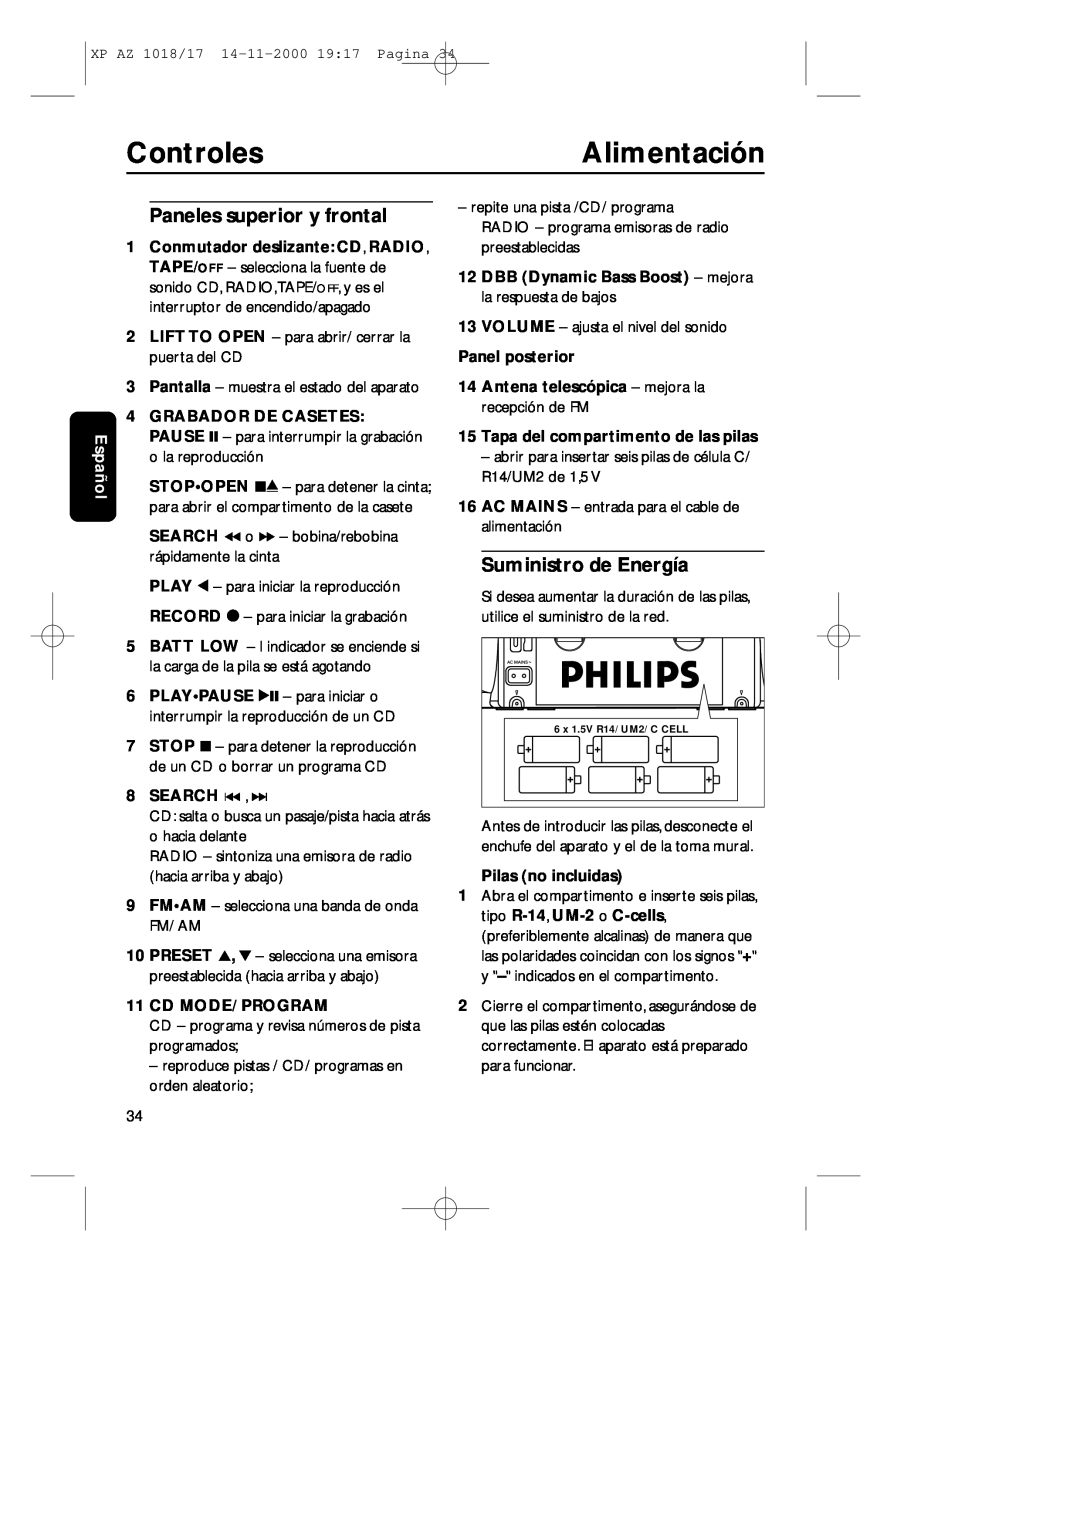 Philips 1018 manual Controles, Alimentación, Paneles superior y frontal, Suministro de Energía, Español, Search ∞ , § 